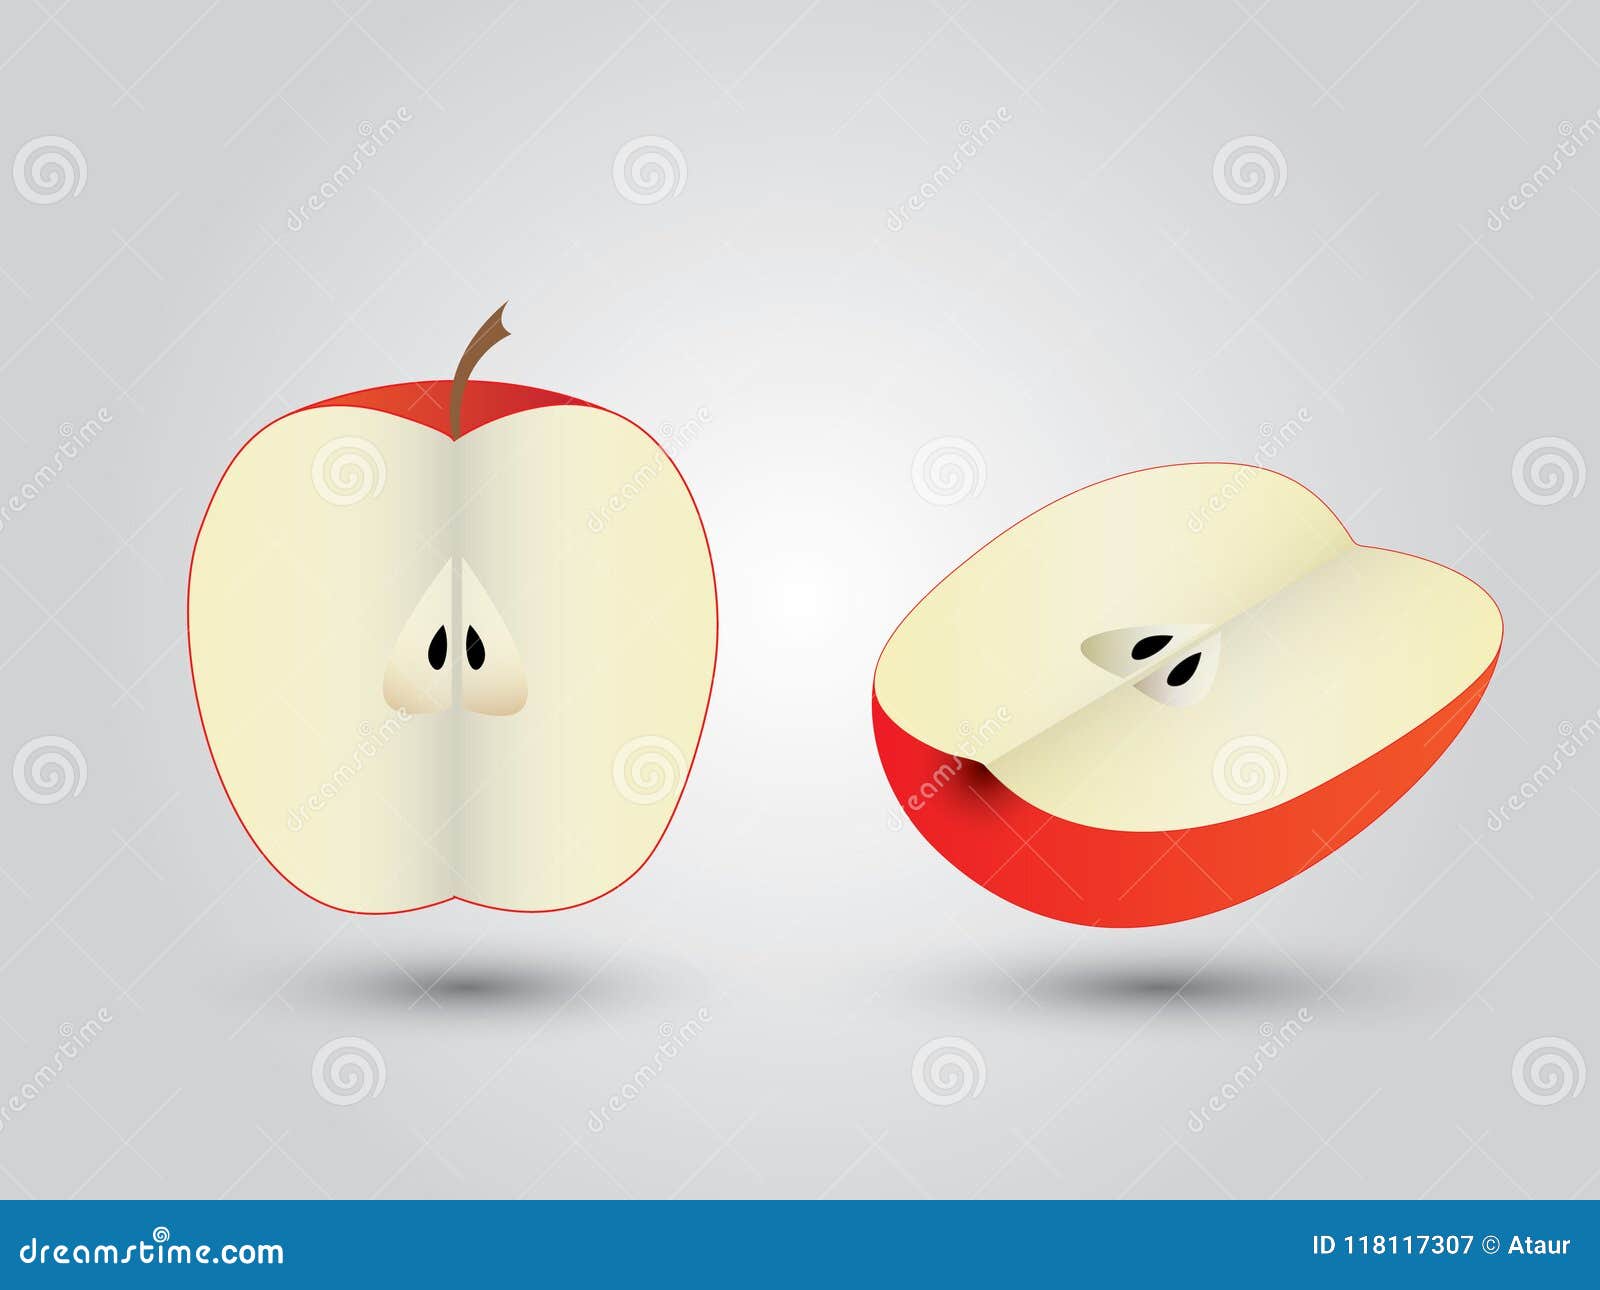 Яблоко разрезанное на 2 части